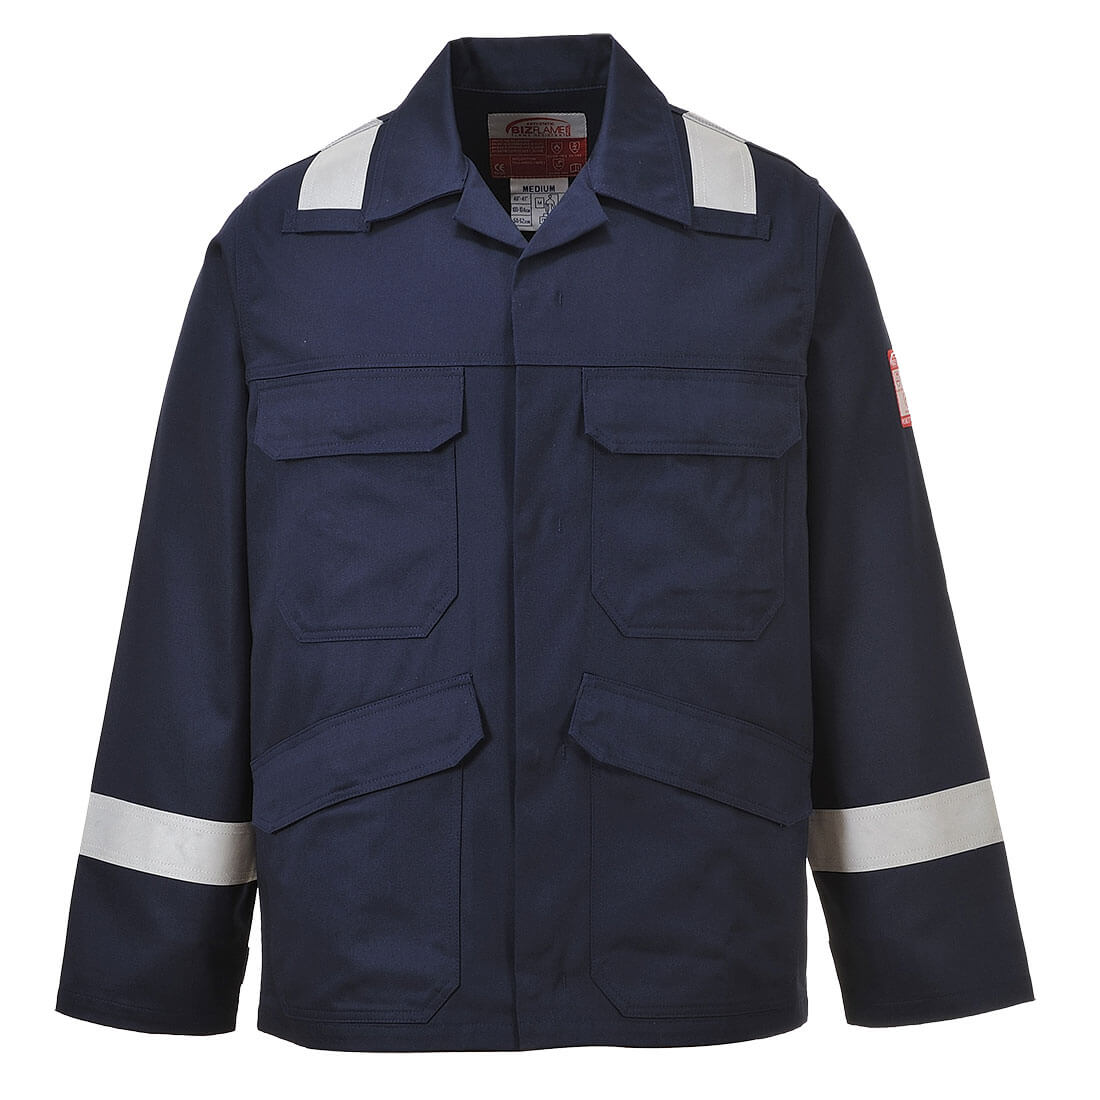 Bizflame Work Jacket  (FR25)